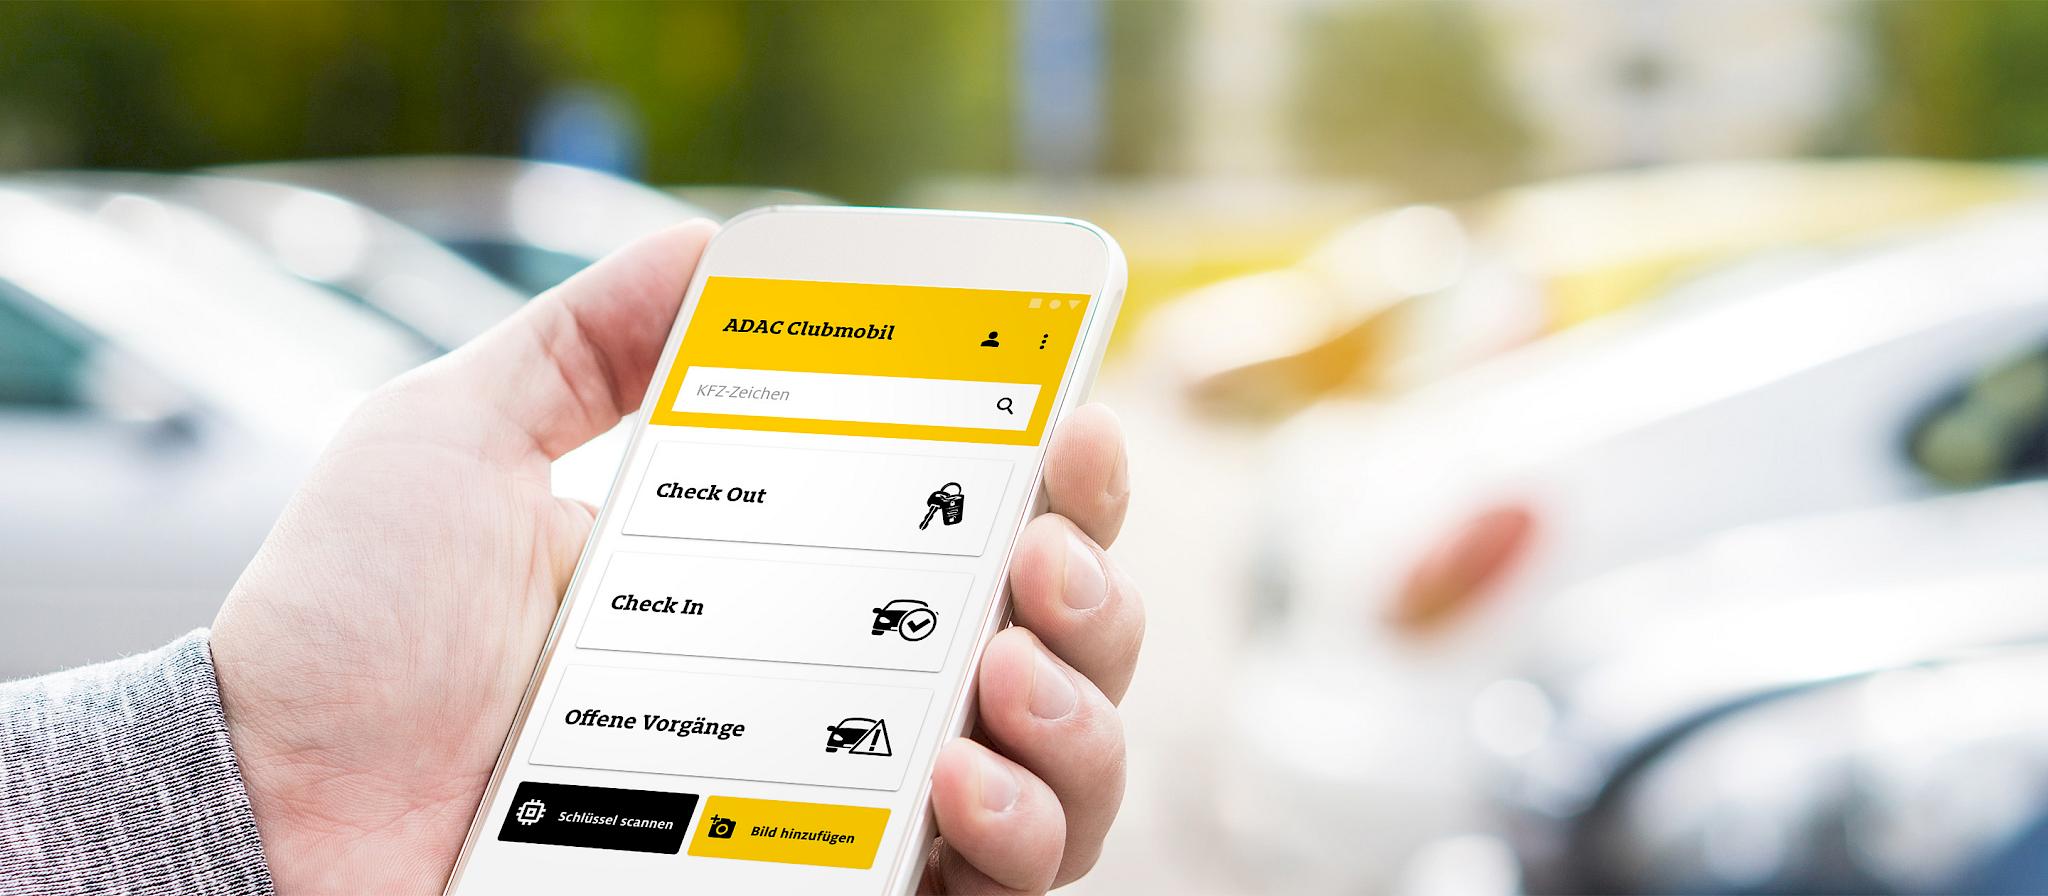 Digitalisierung Vermietungsprozess des ADAC Clubmobils durch App